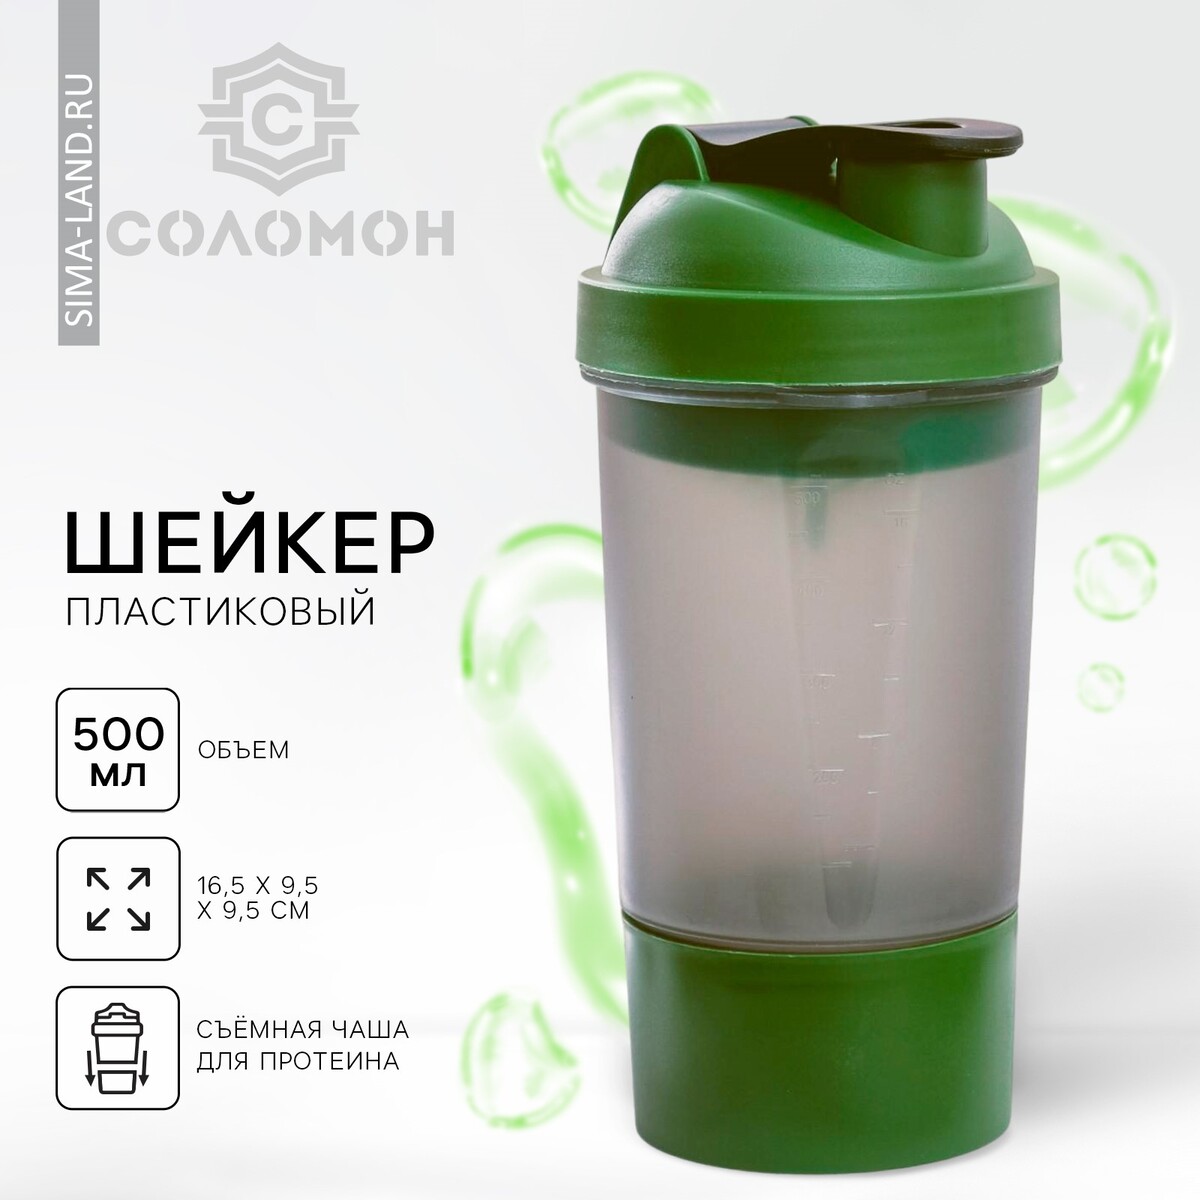 Шейкер спортивный с чашей под протеин, серо-зеленый, 500 мл детский спортивный комплекс romana eco1 дерево белый сг000004620